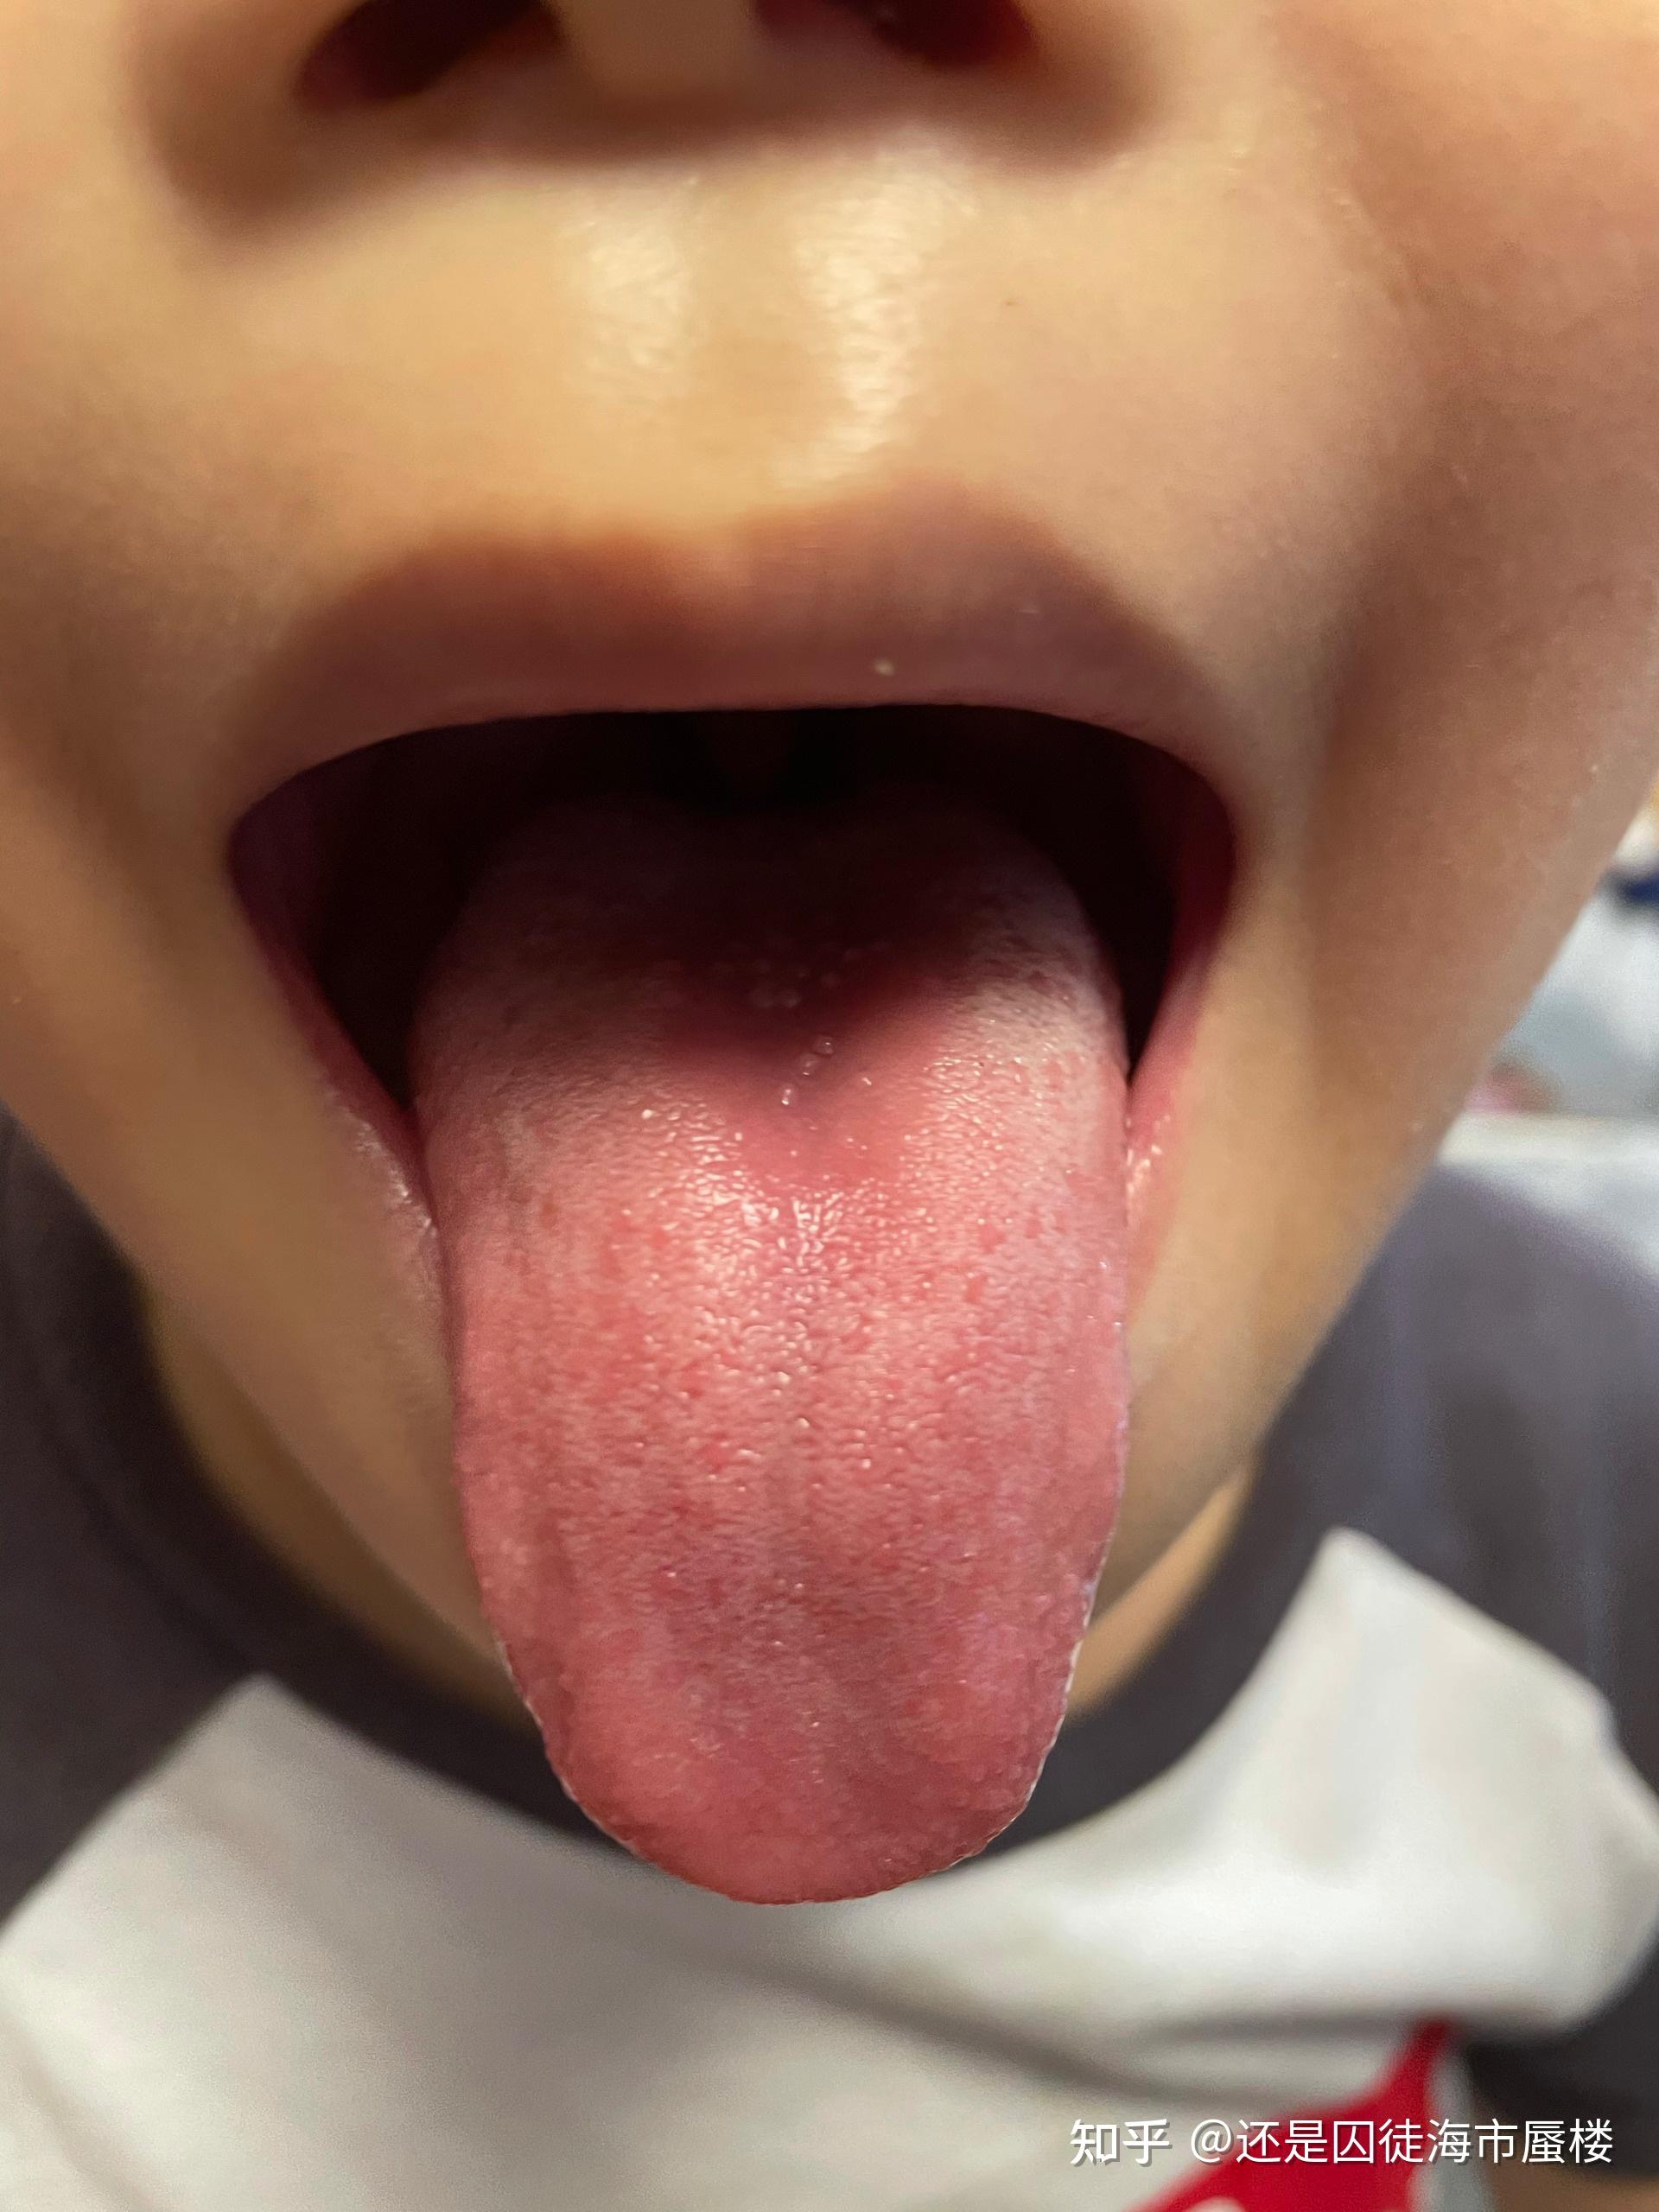 舌头上很多小泡? 